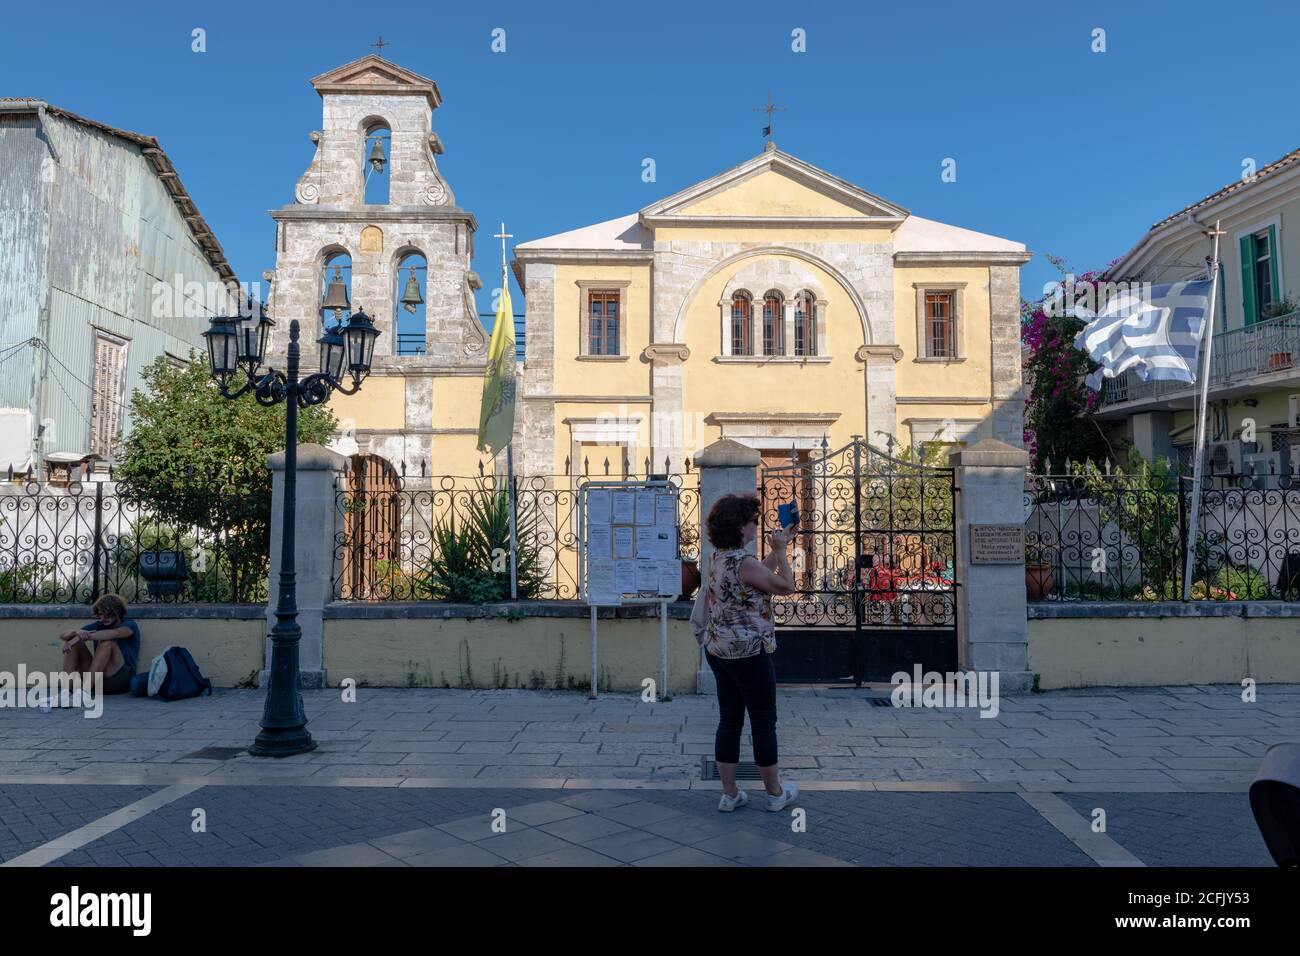 Le Theotokos, un site religieux grec orthodoxe sur la rue Mela dans la capitale de l'île. Banque D'Images